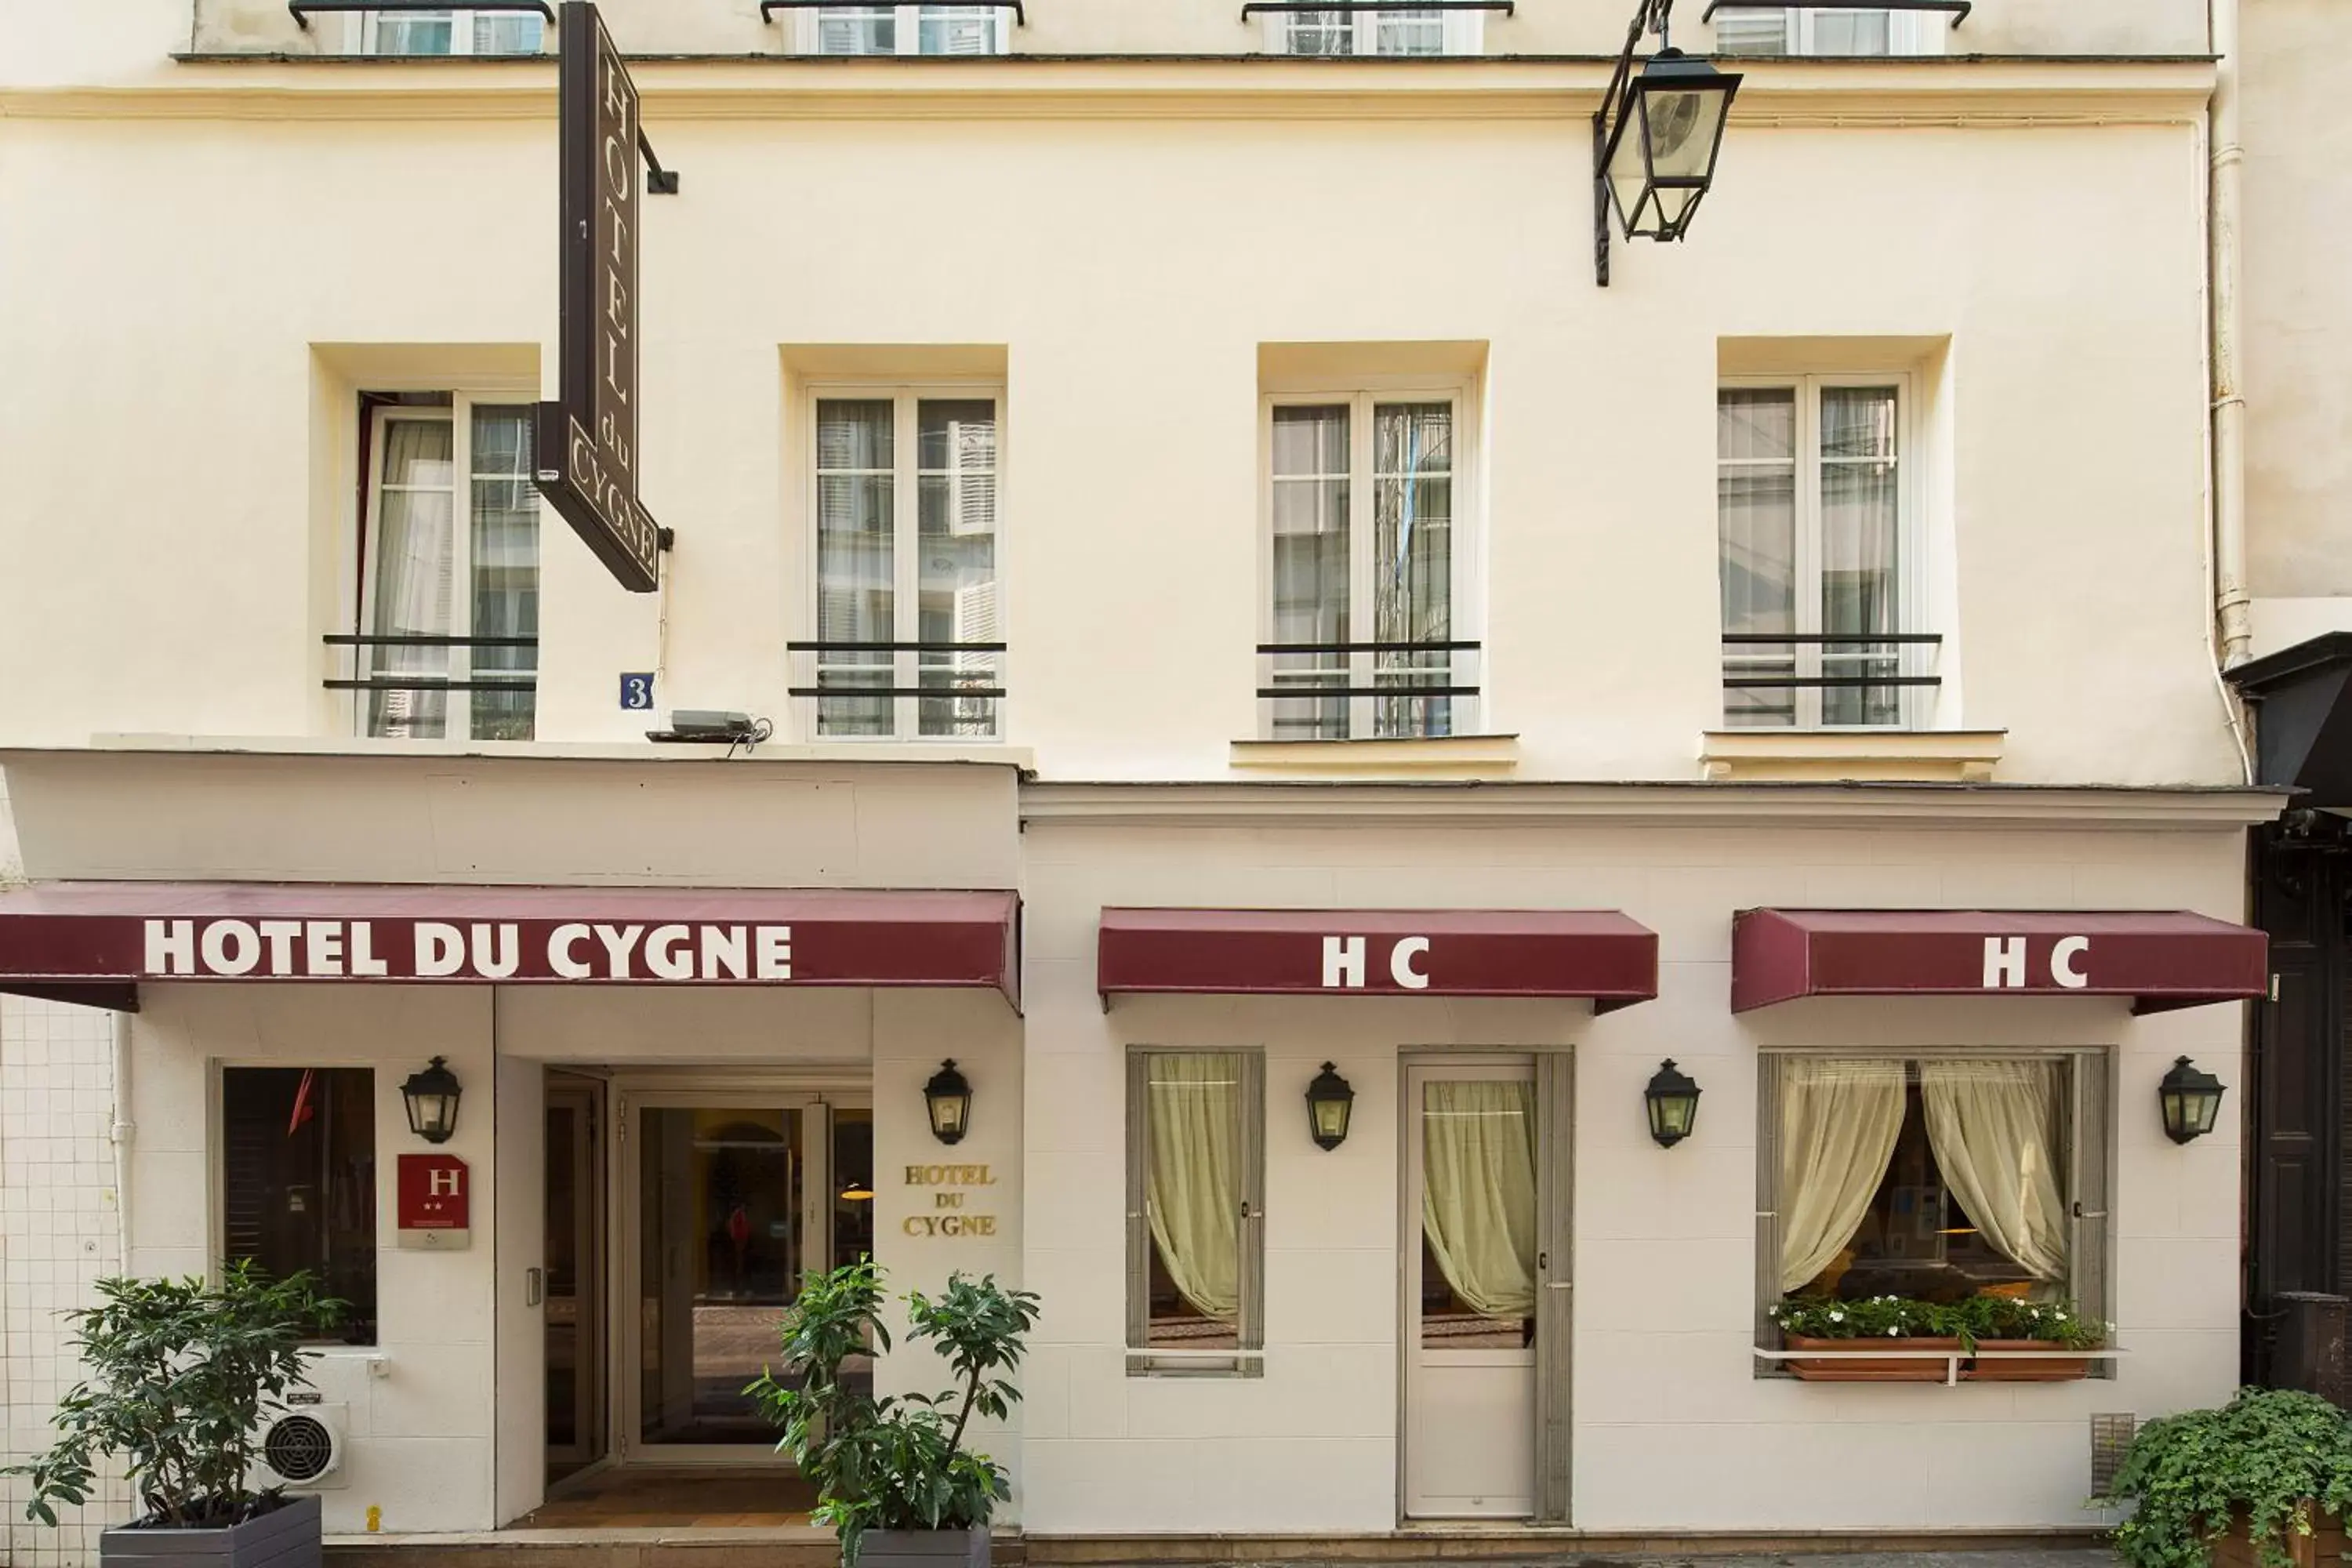 Facade/entrance, Property Building in Hôtel du Cygne Paris